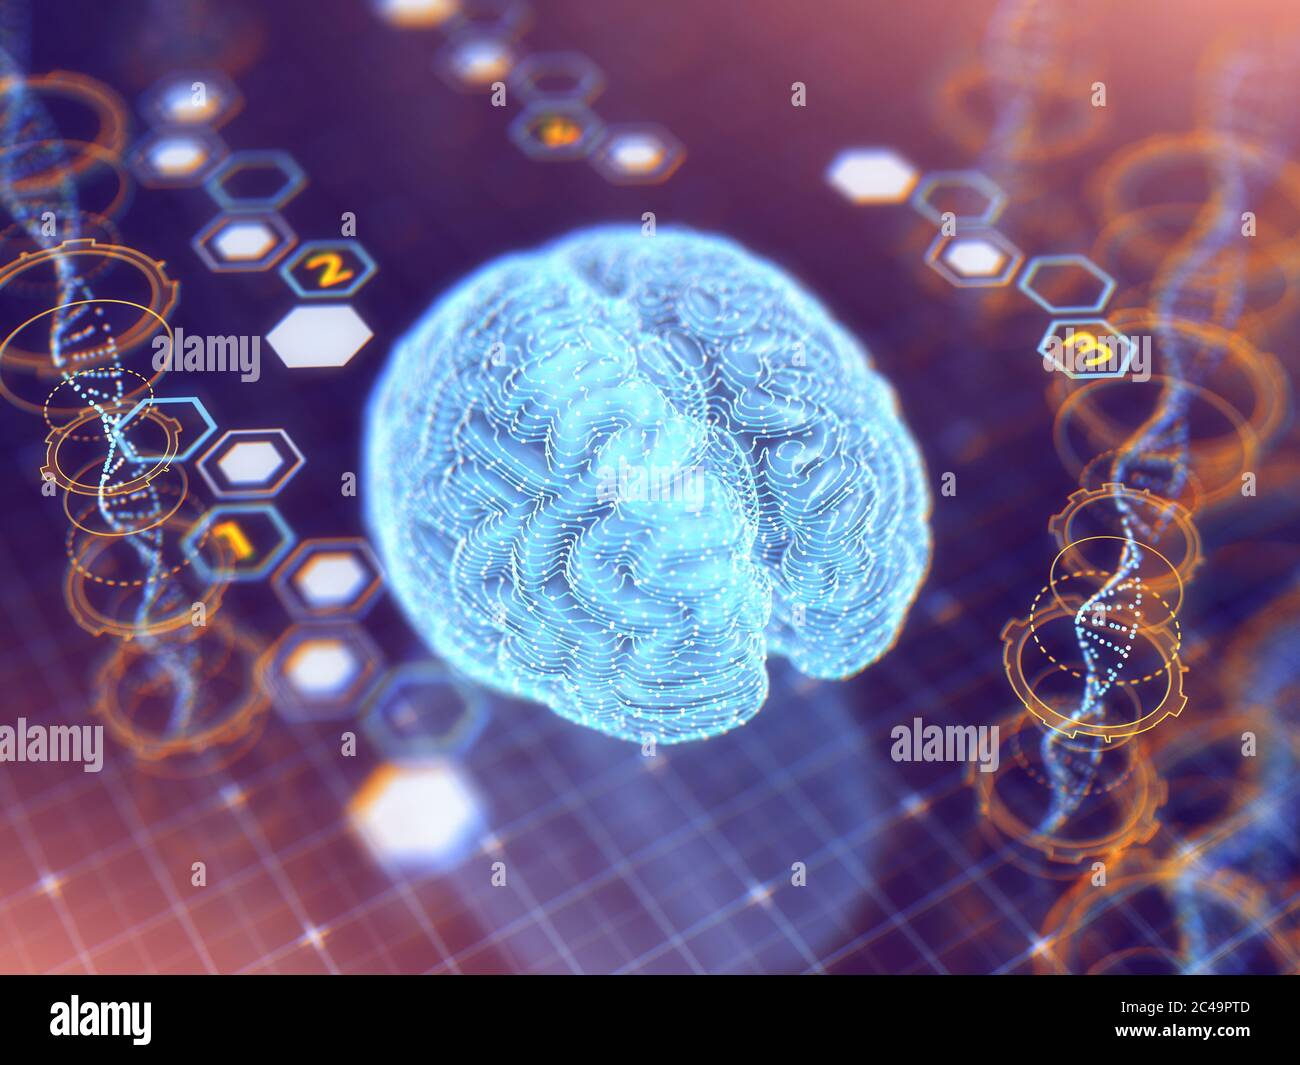 Fondo del concepto de Inteligencia Artificial, Red neural modelada en el cerebro humano utilizando algoritmos de aprendizaje profundo para el análisis de datos, Resumen AI Foto de stock